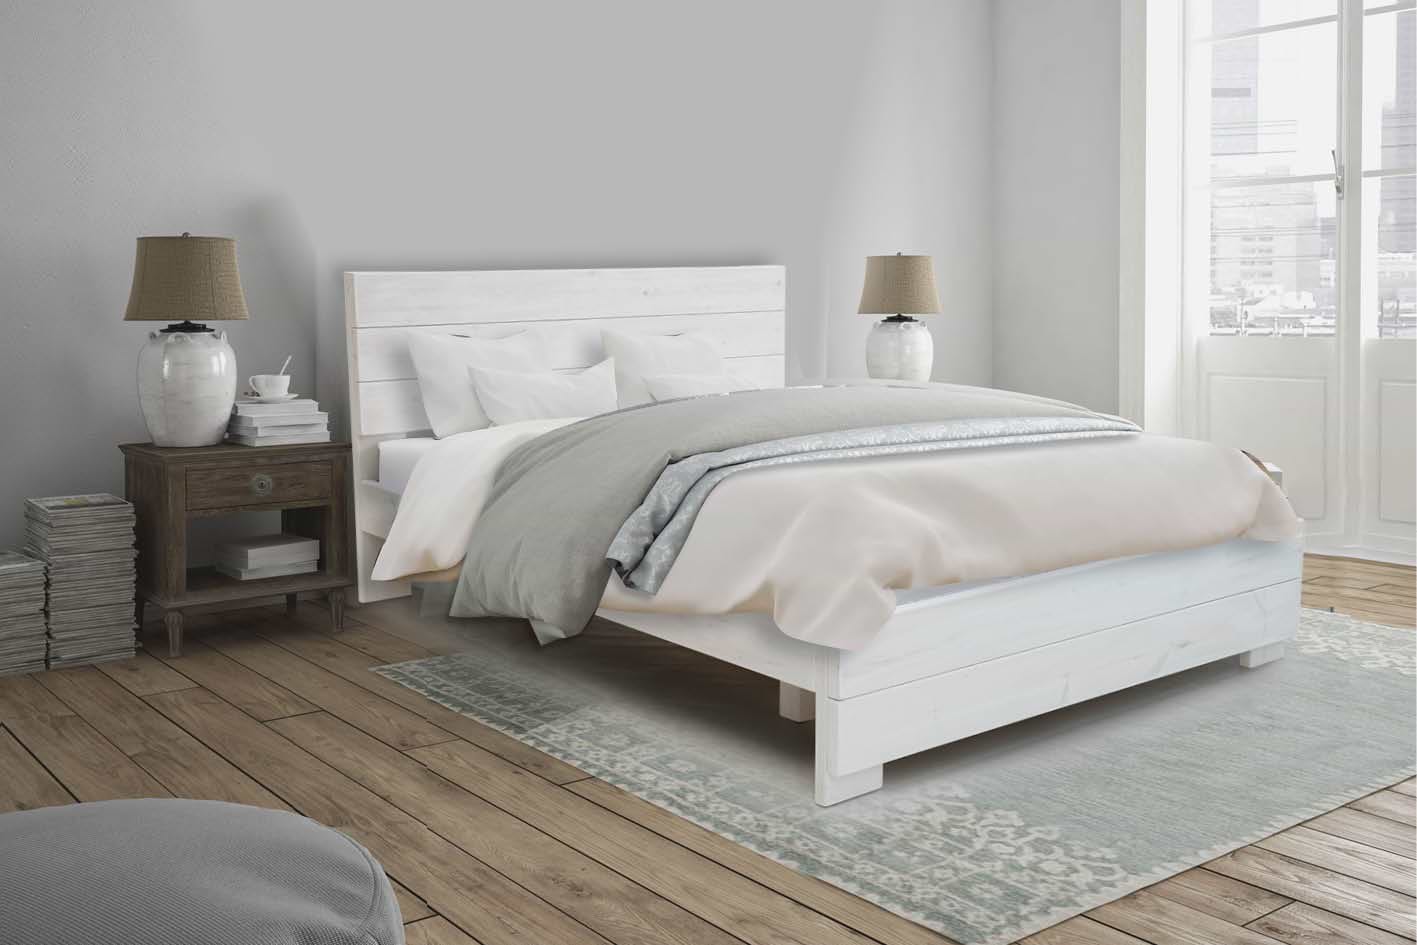 מיטה מעוצבת מעץ מלא 140X190 דגם 5003 צבע וונגה + מזרן קפיצים מתנה Olympia 